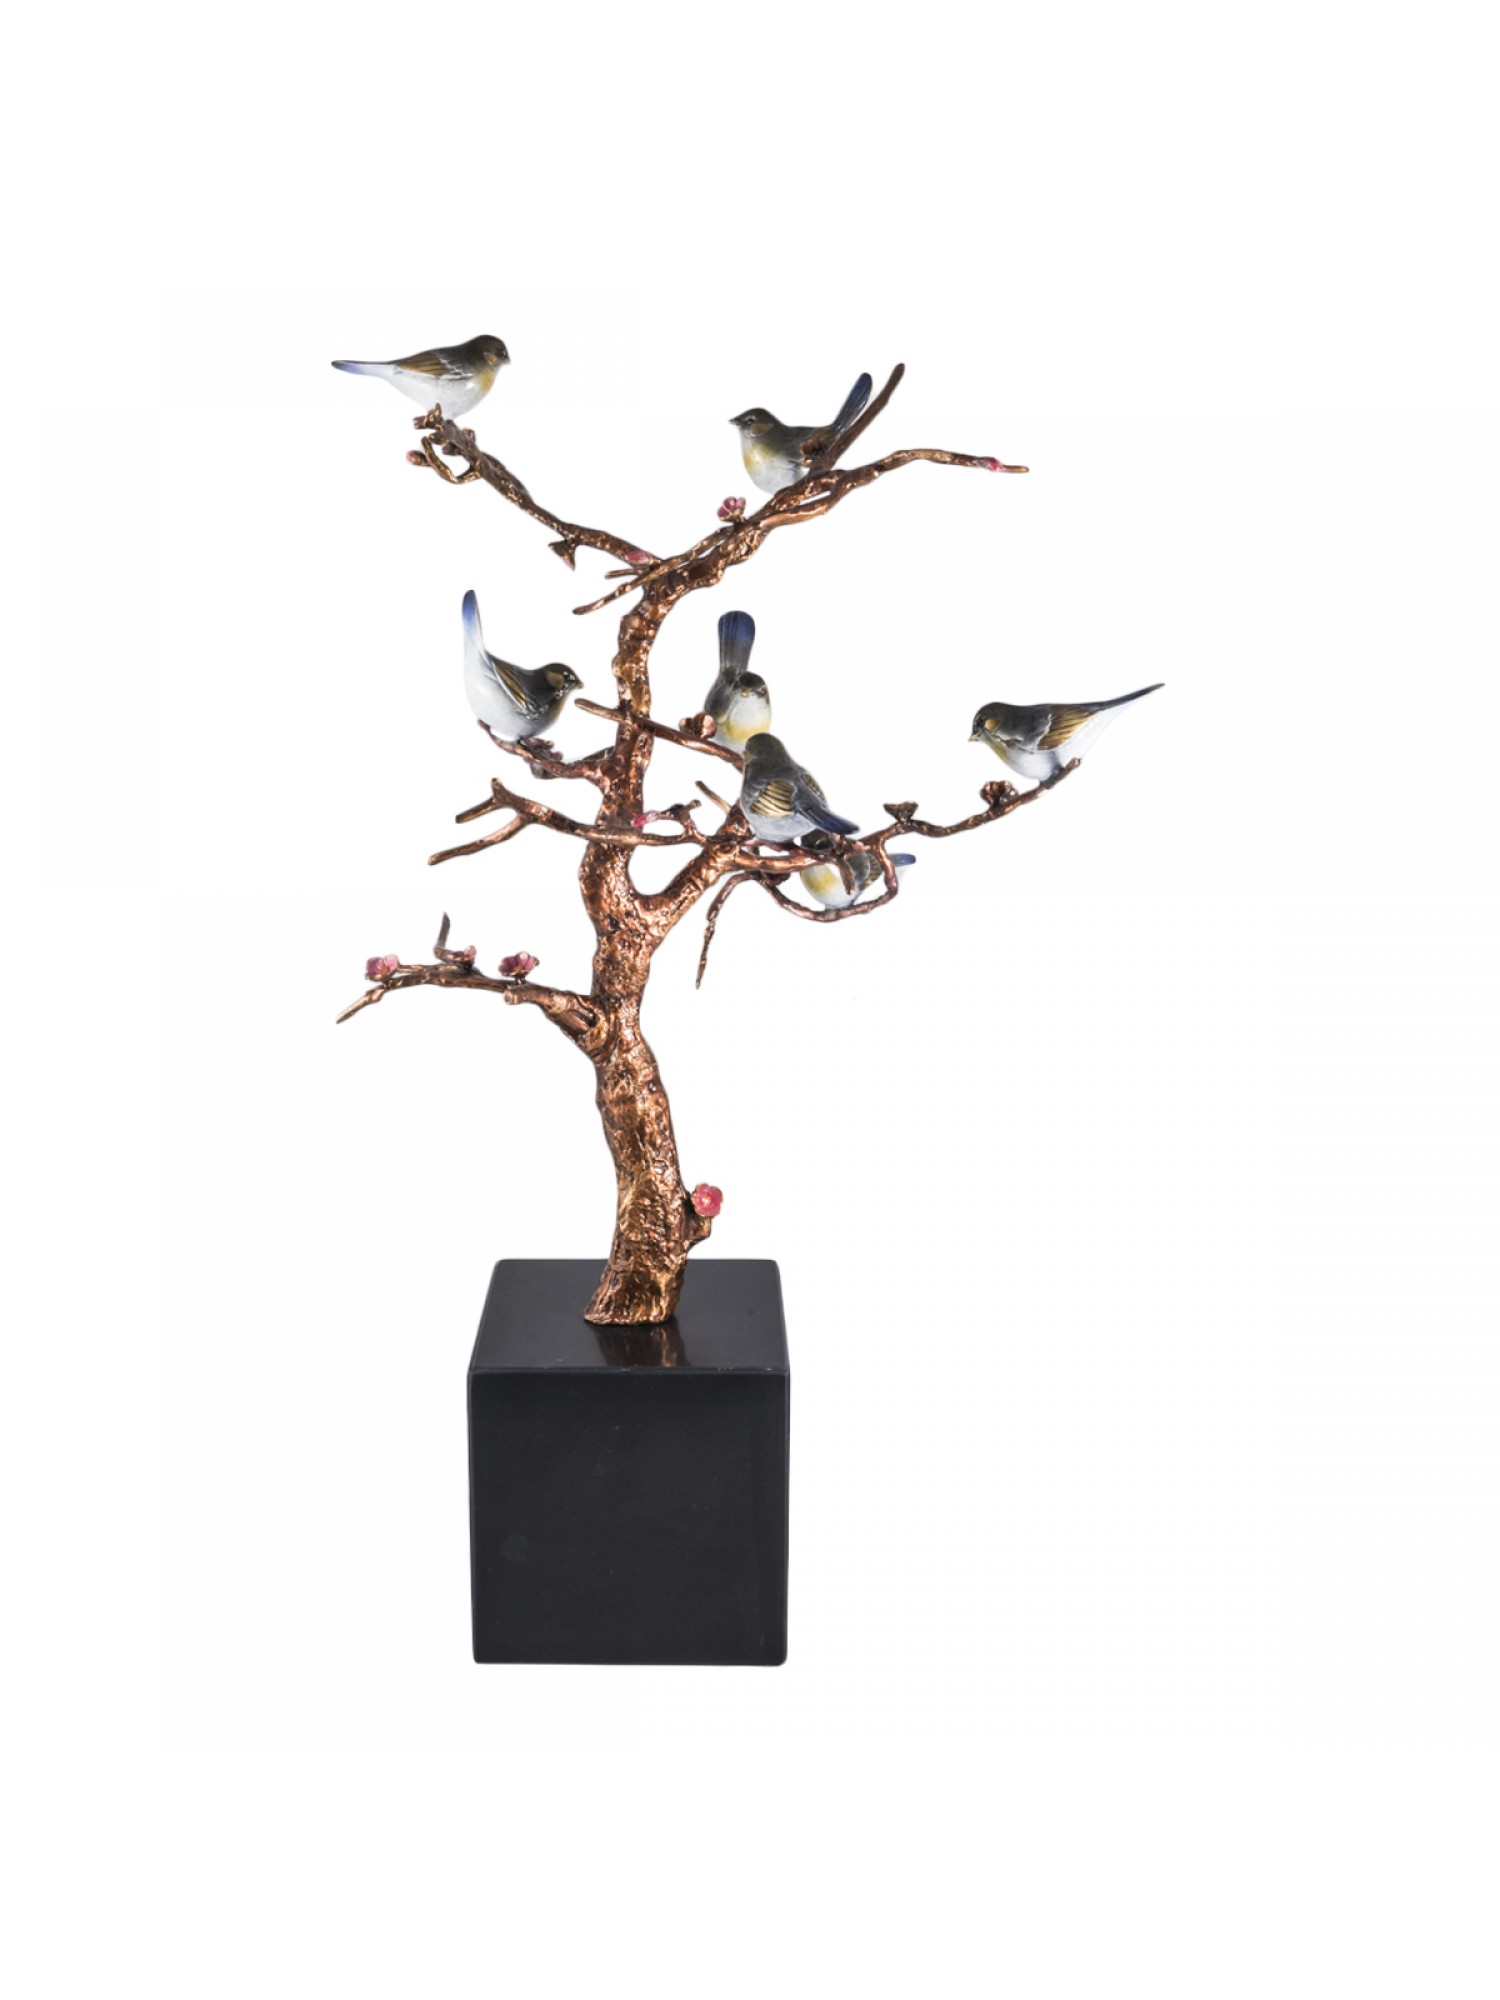 Статуэтка "Дерево с Птицами" поможет Вам обрести новые возможности и получить славу, почет и уважение